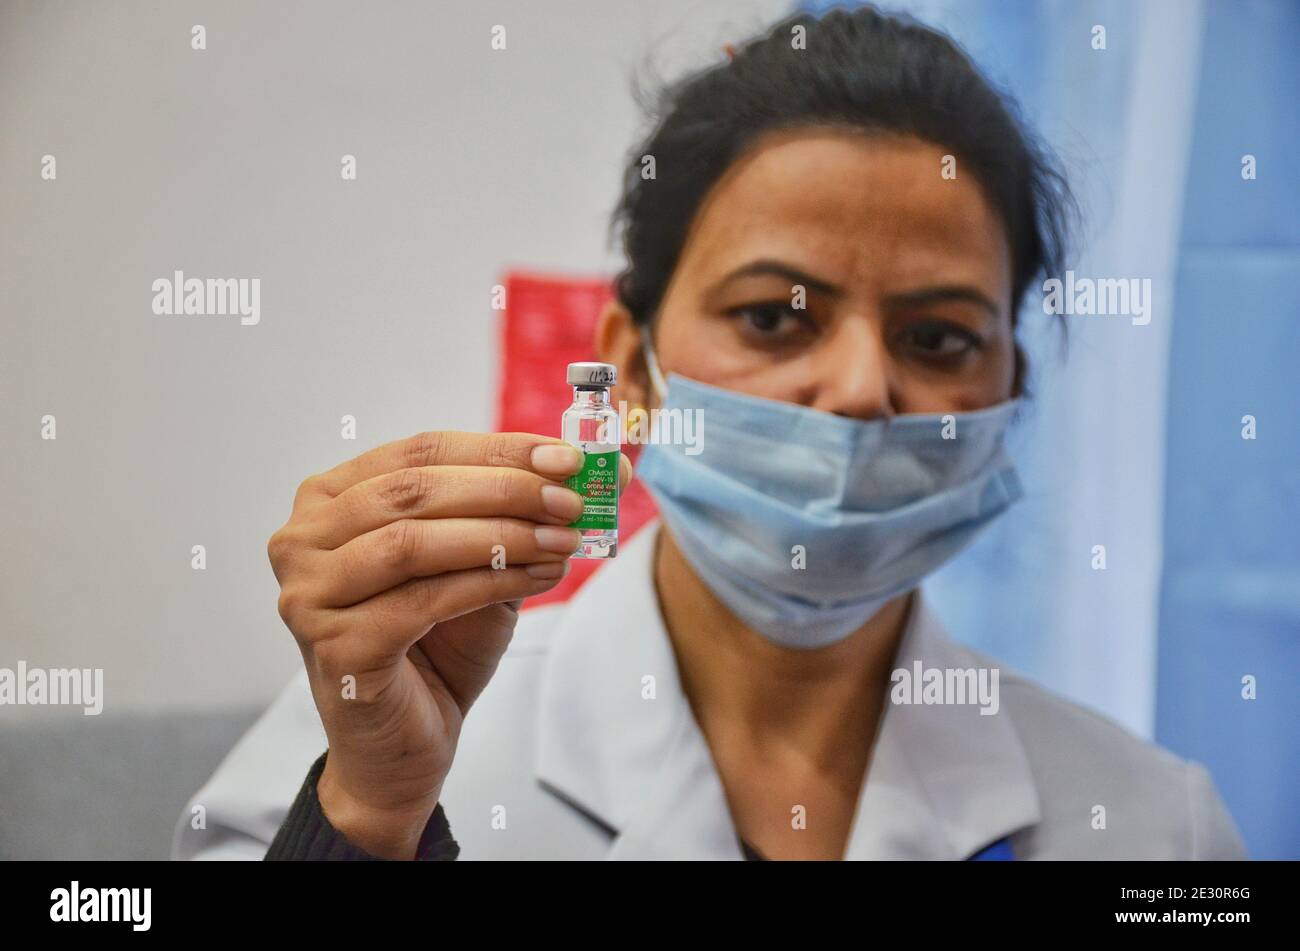 Un operatore sanitario indiano che mostra una fiala di vaccinazione COVID-19 Covisield durante la vaccinazione in India presso un ospedale di Jammu il 16 gennaio 2021. (Foto di Bikas Bhagat / INA Photo Agency / Sipa USA) Foto Stock